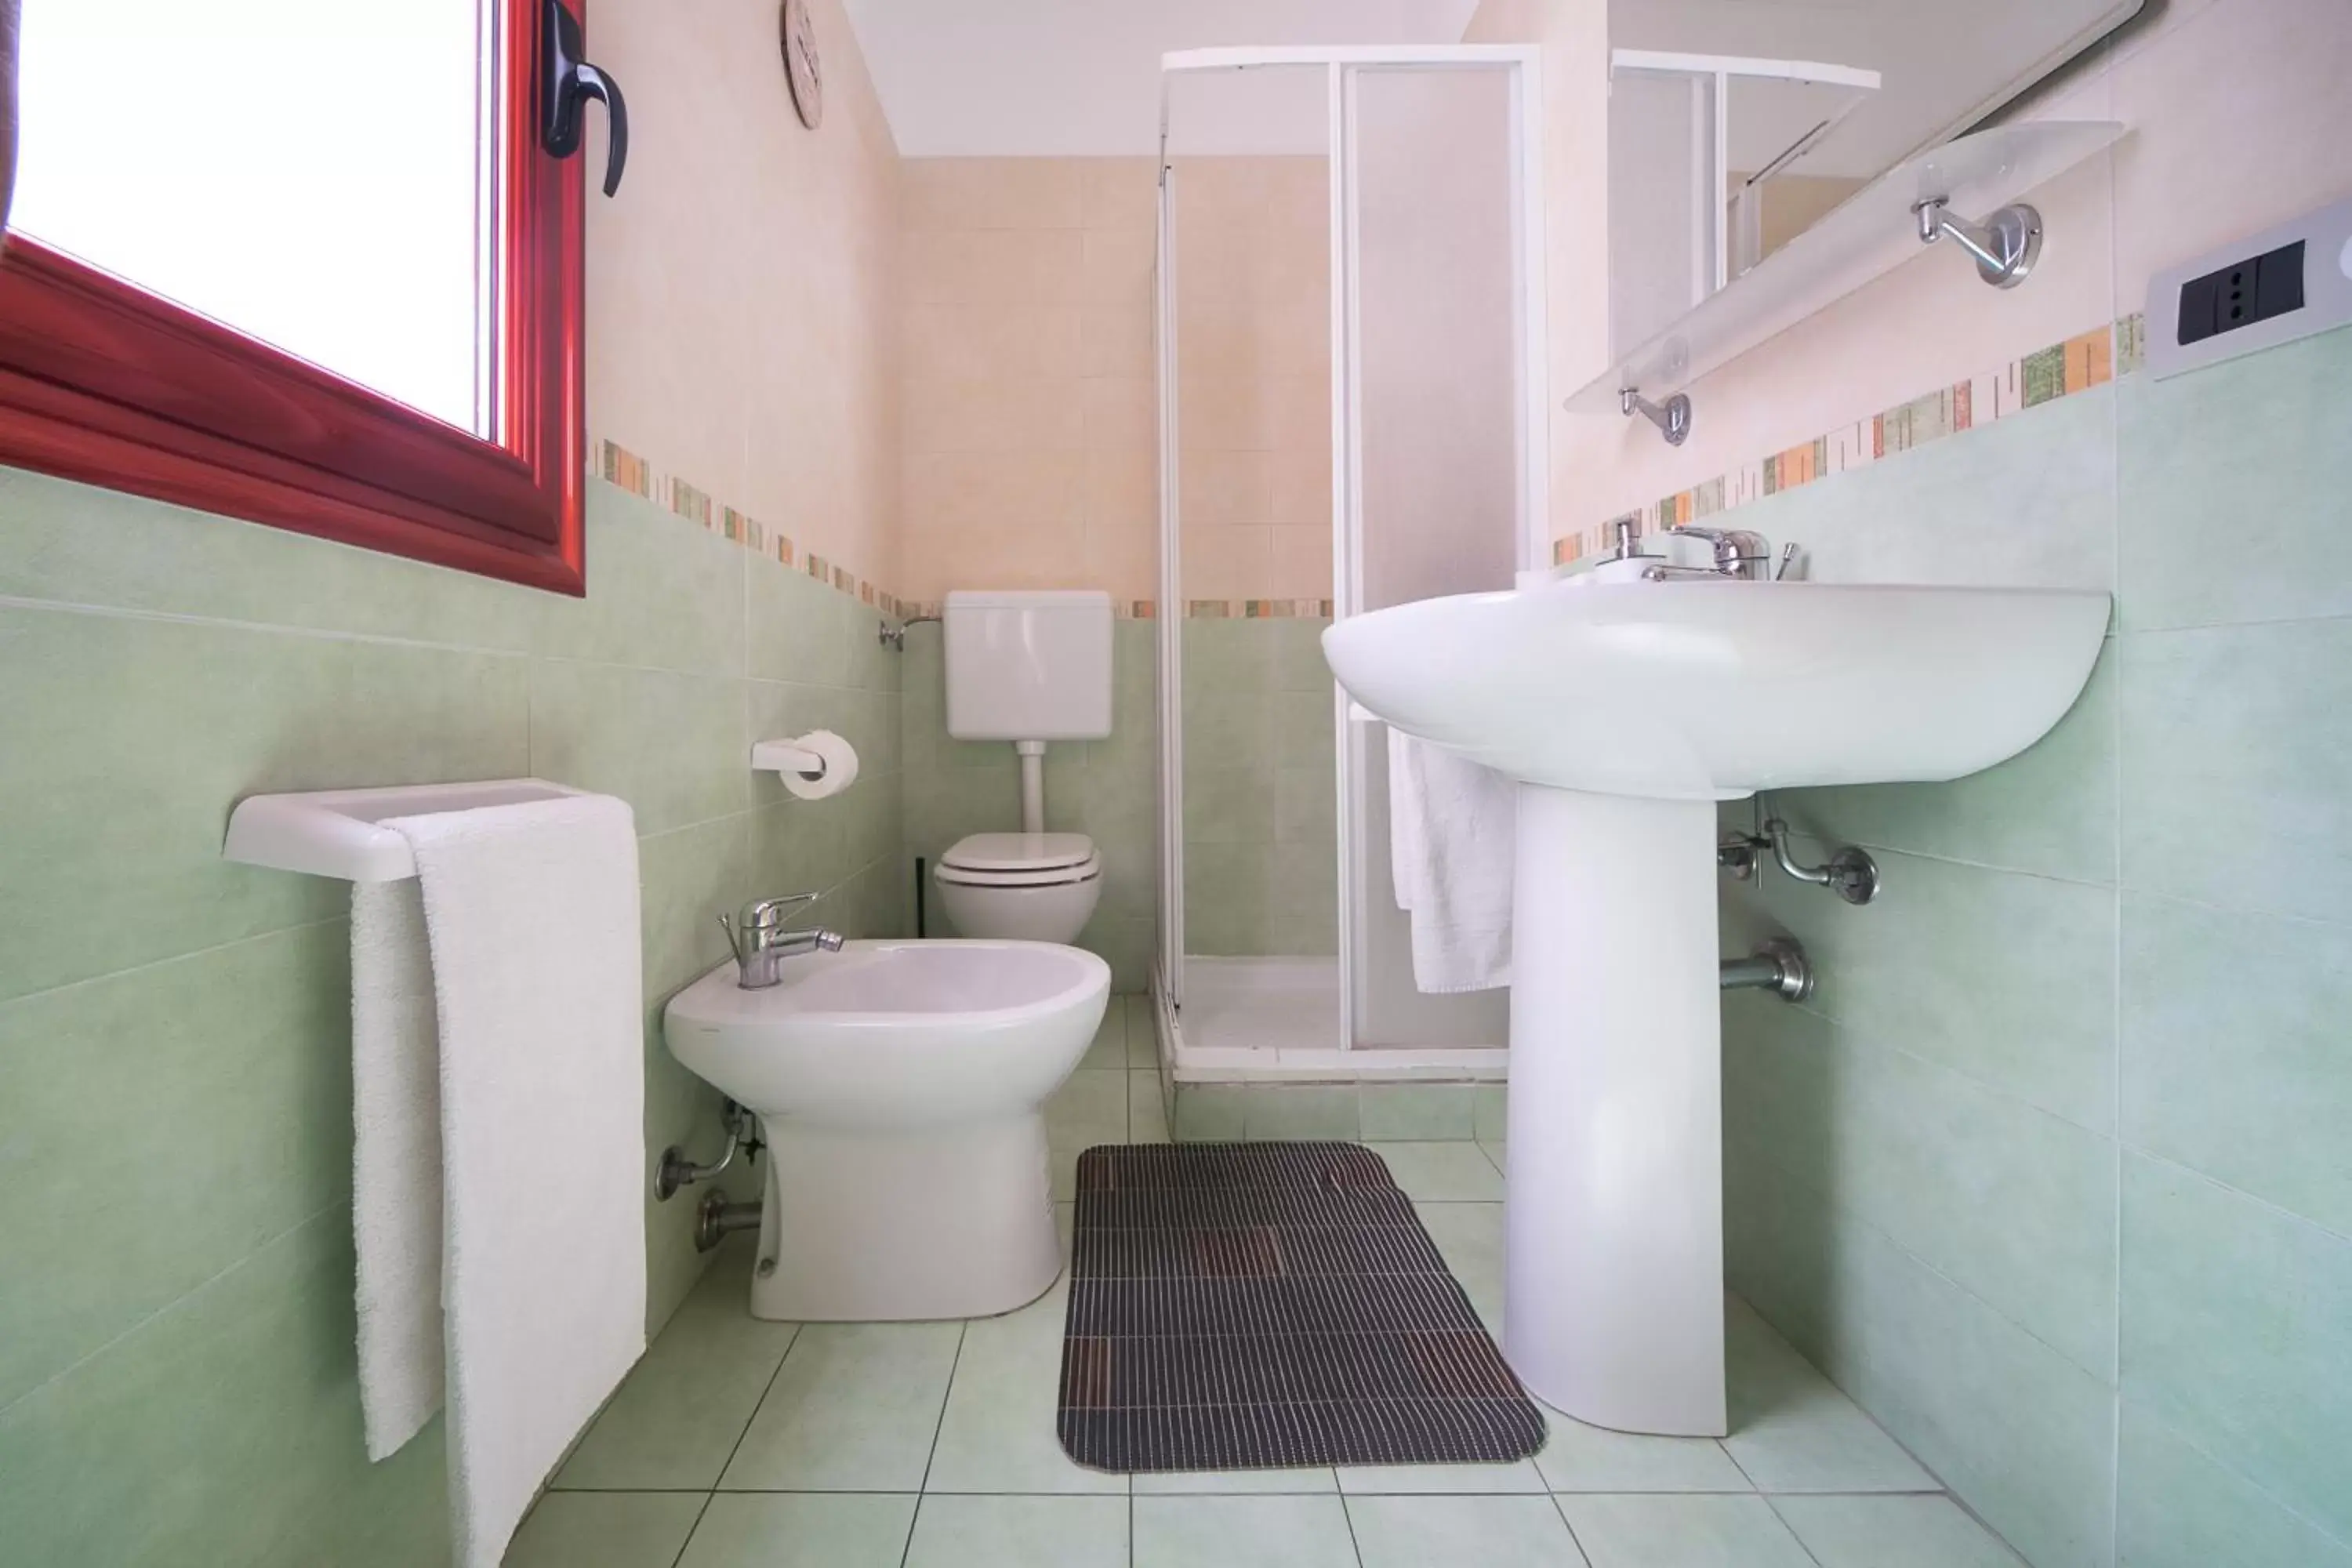 Area and facilities, Bathroom in B&B del Lungomare